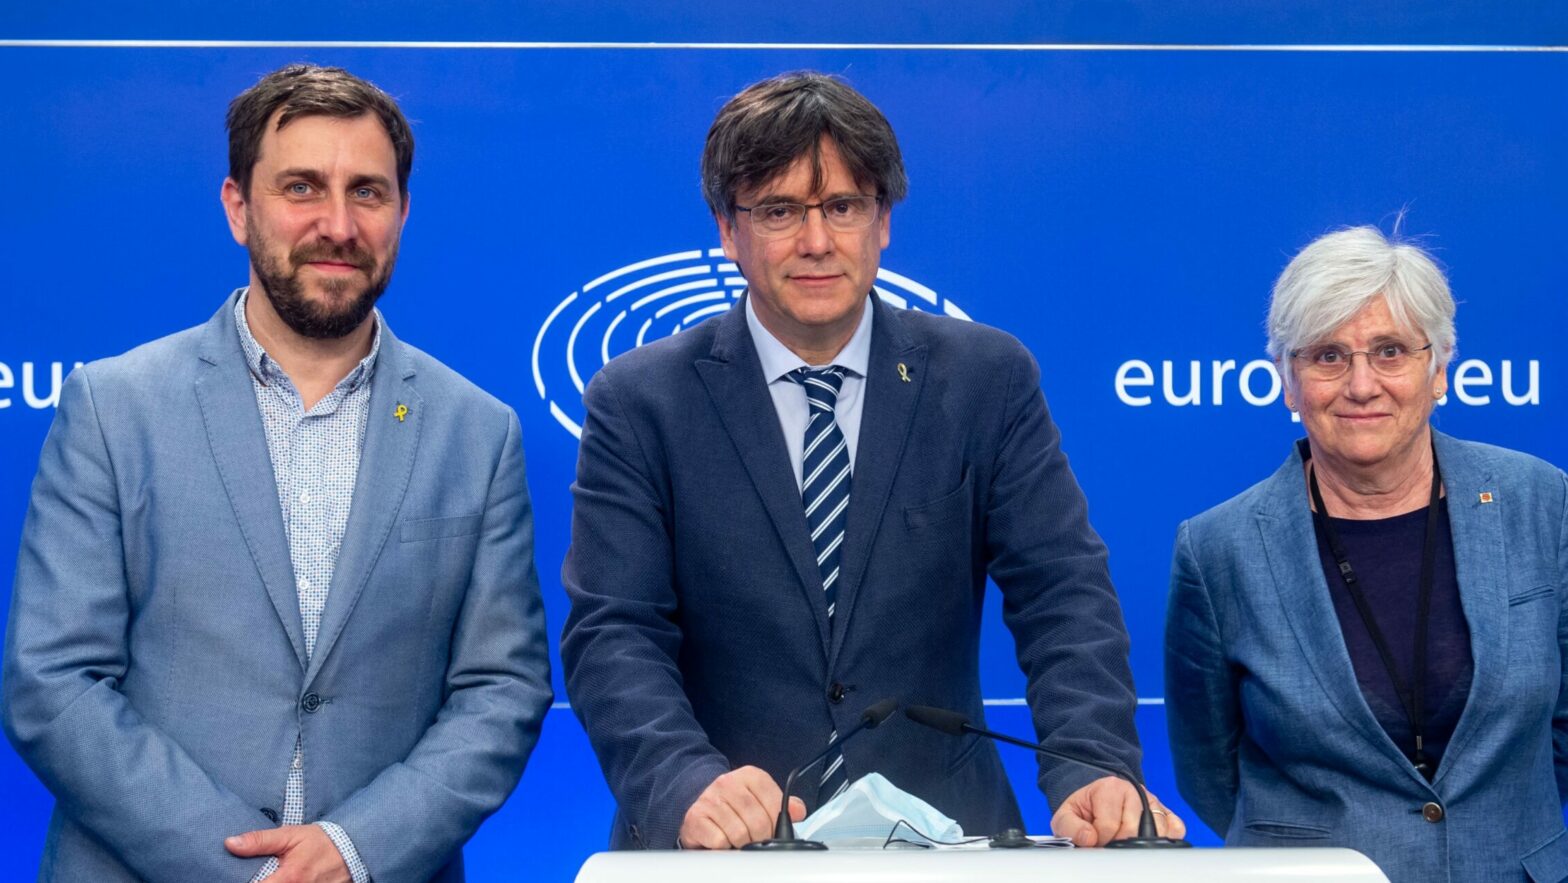 Puigdemont, Comín y Ponsatí abren una oficina europarlamentaria en Barcelona